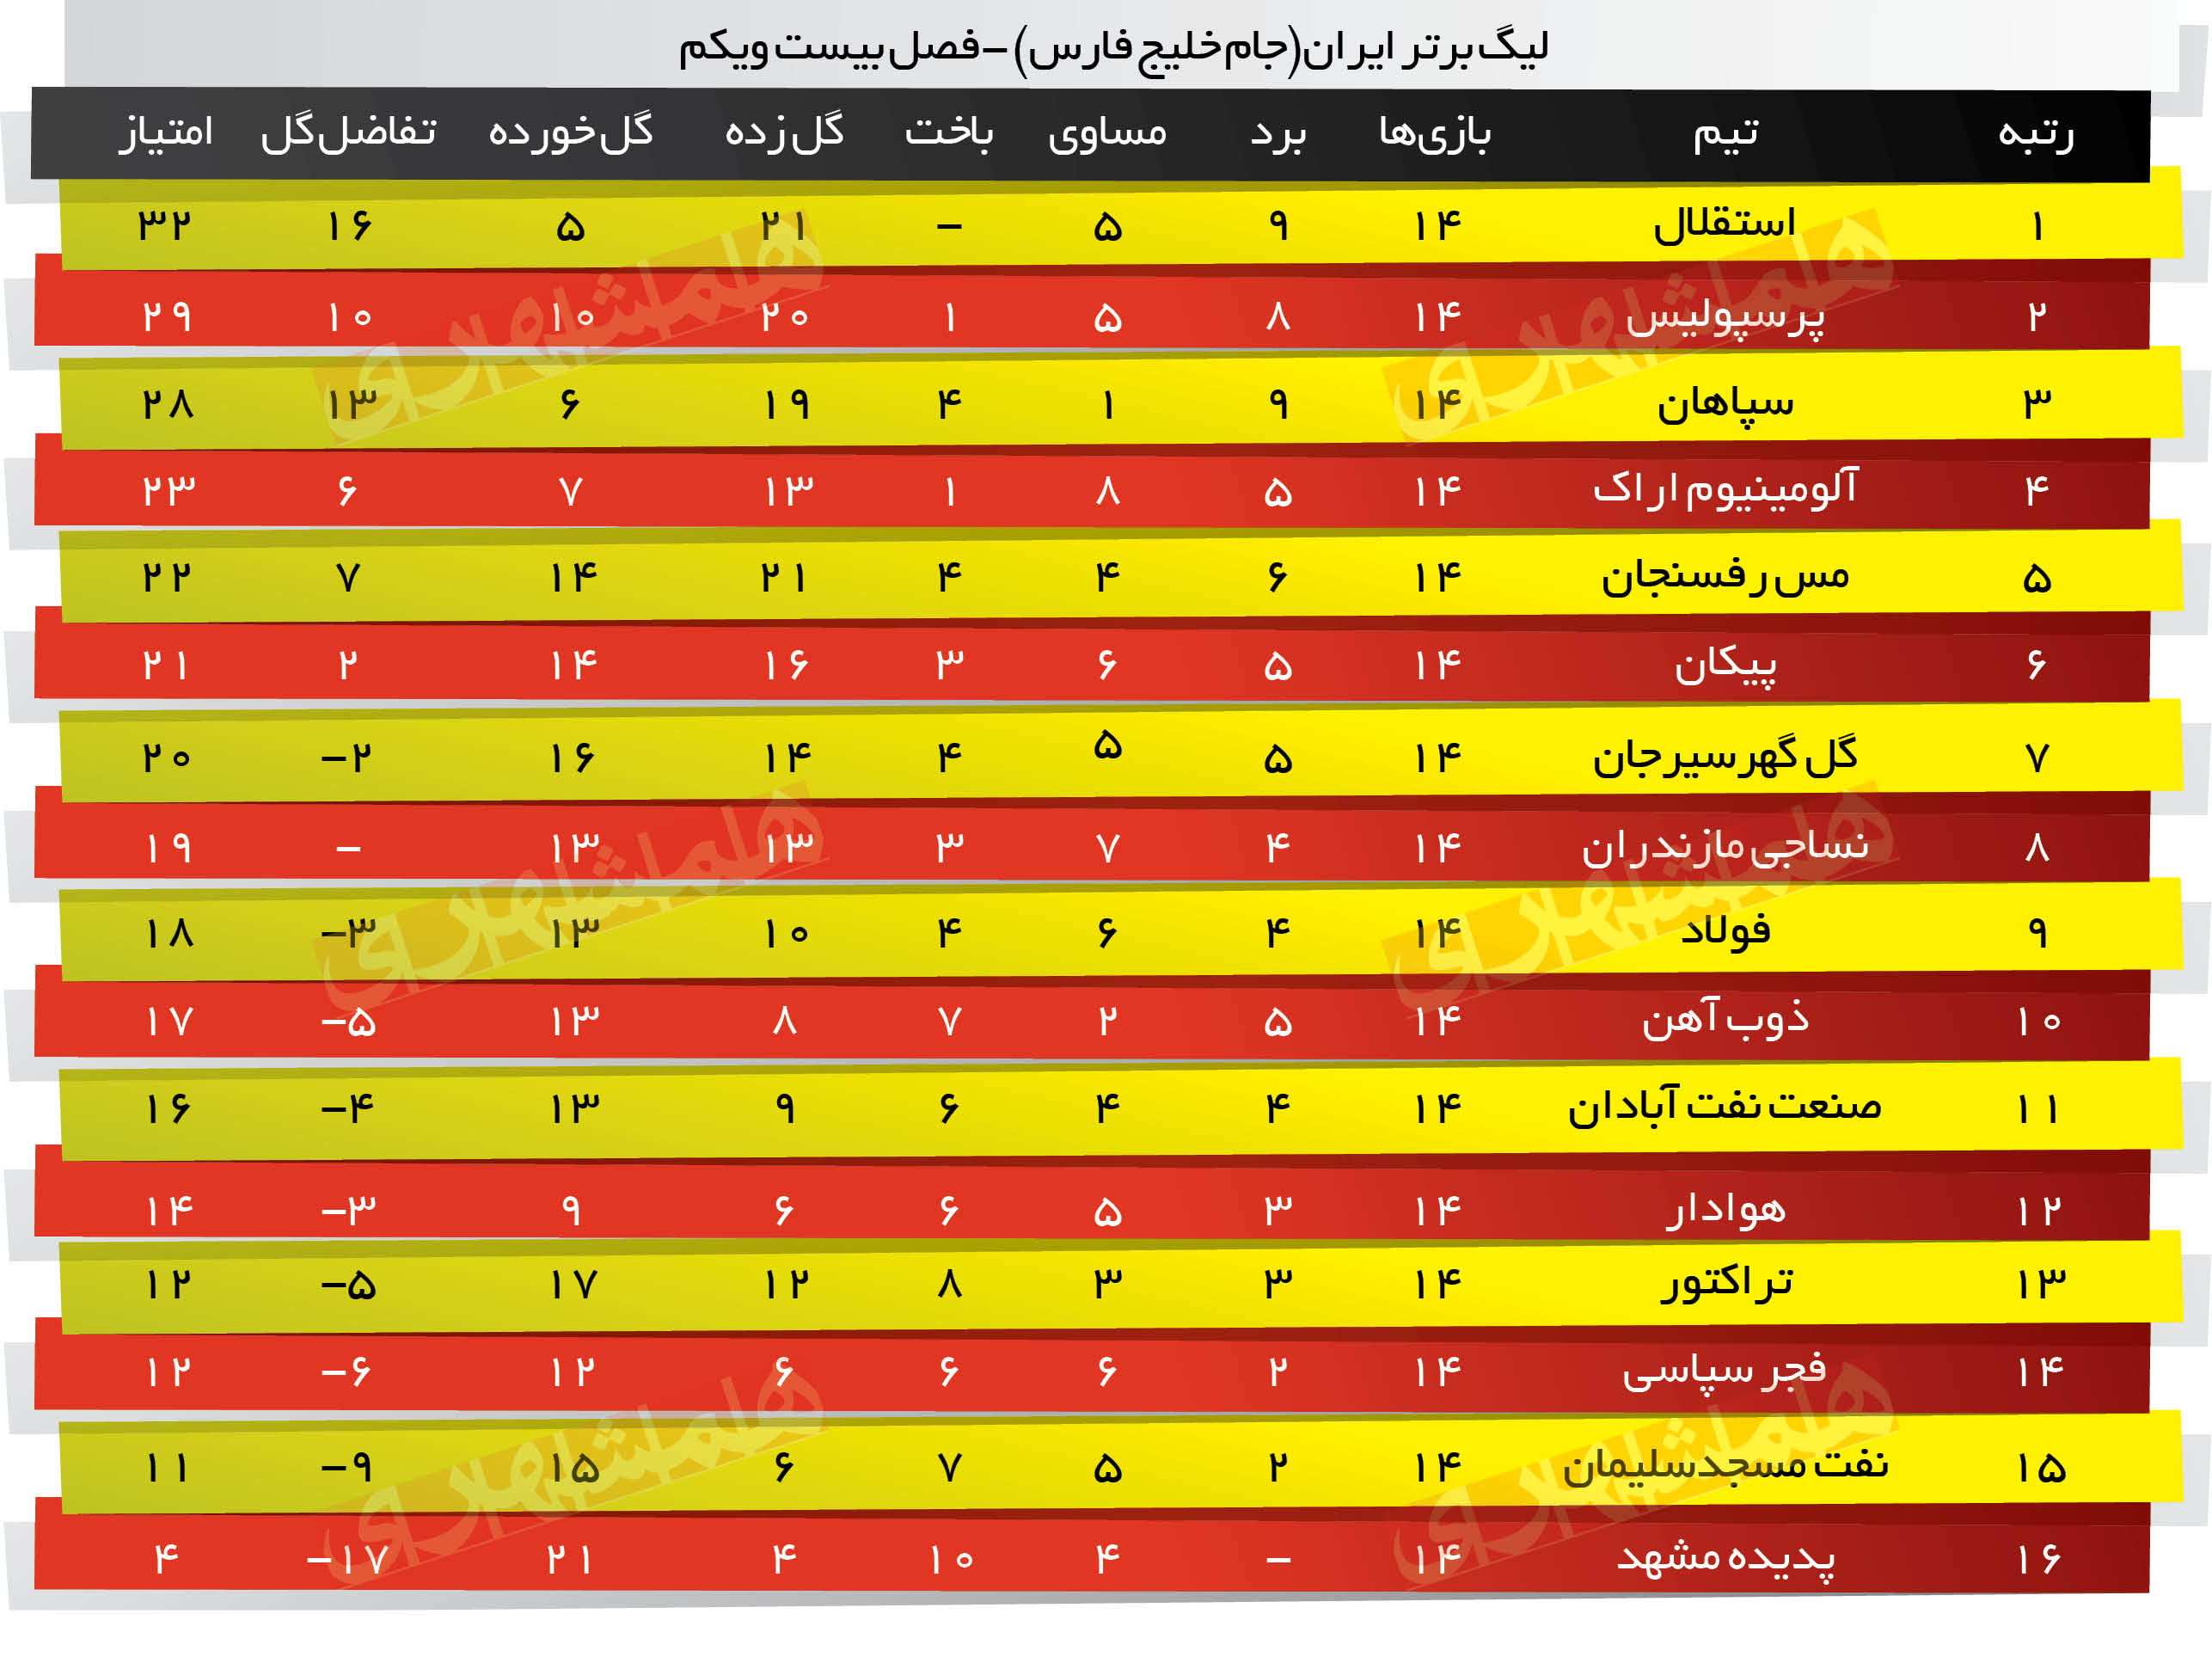 لیگ برتر ایران جام خلیج فارس -فصل بیست ویکم